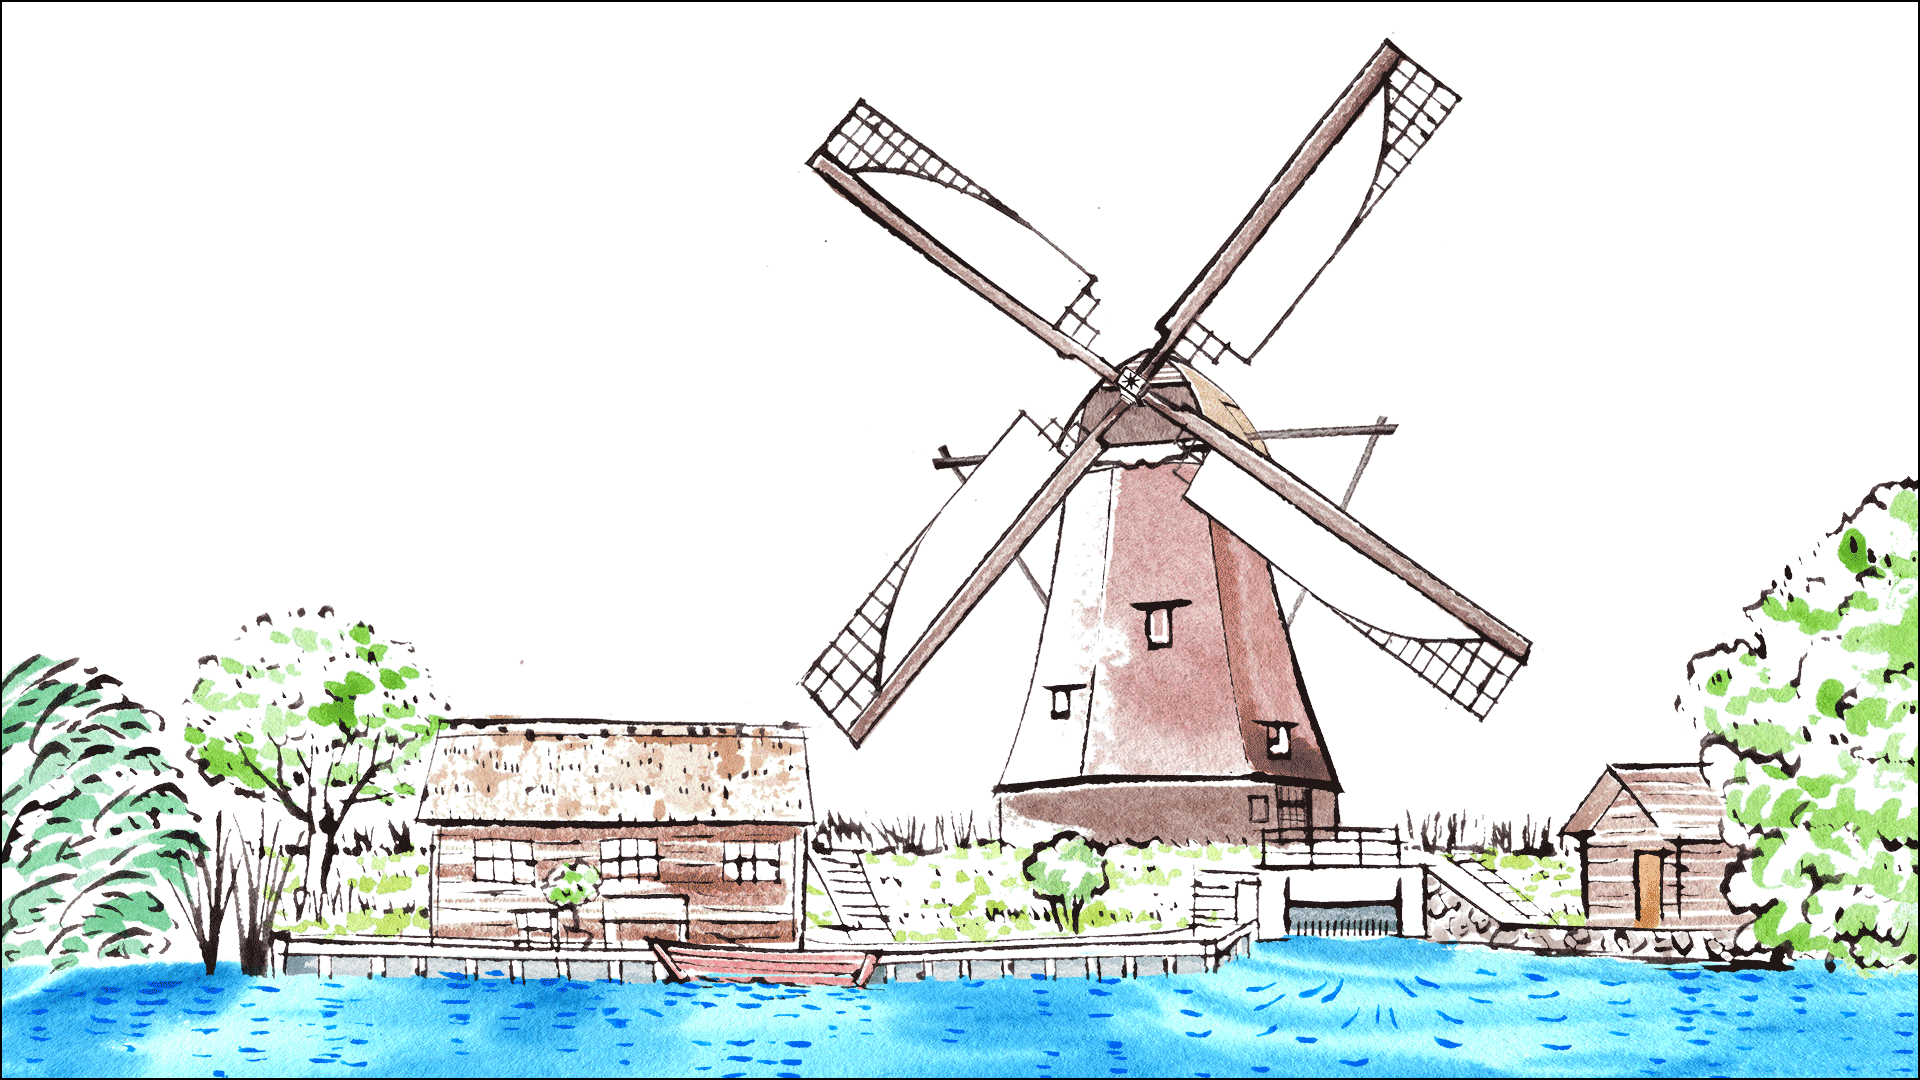 キンデルダイク エルスハウトの風車網 人と水の歴史を旅しよう 荏原製作所